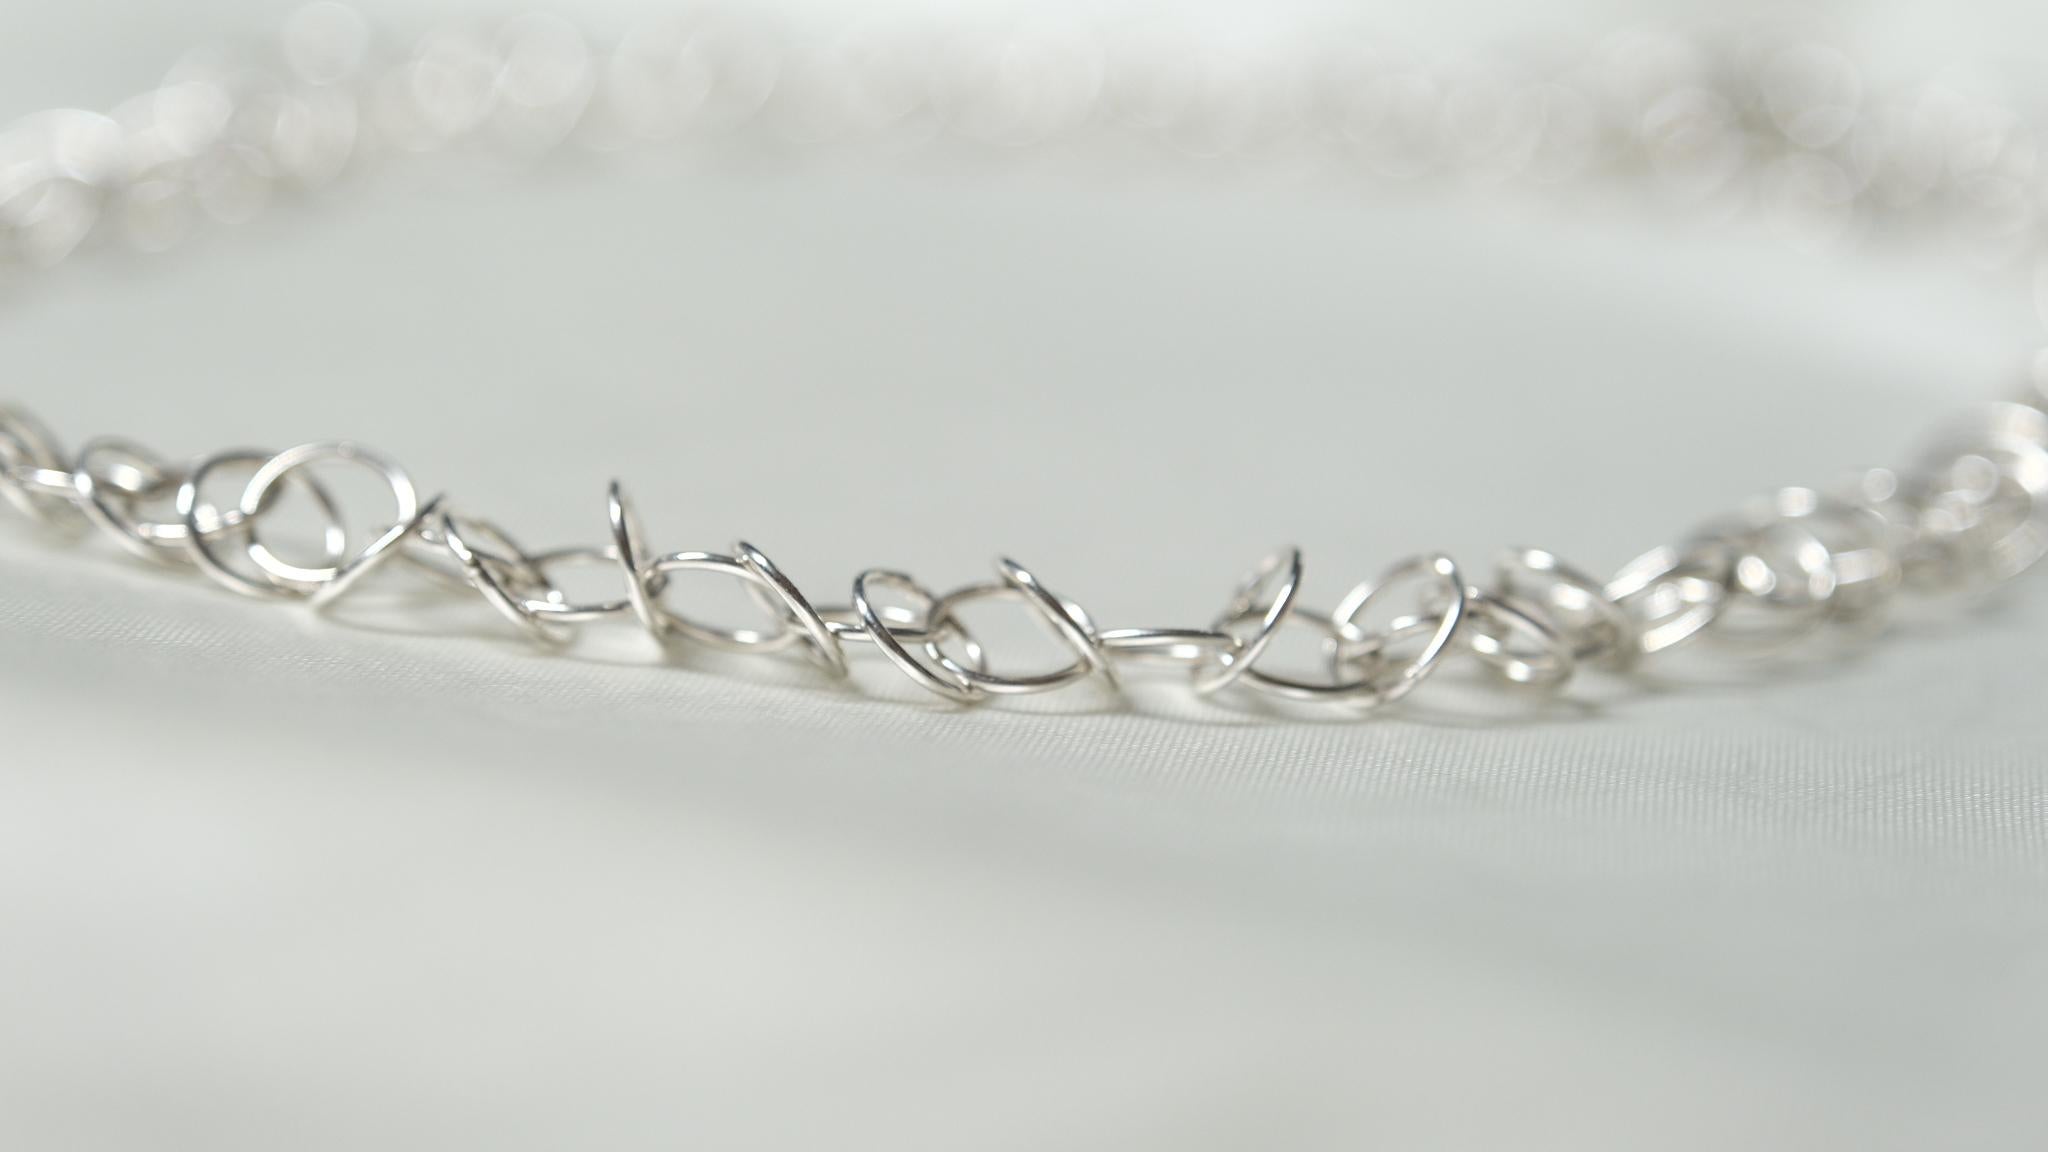 Einzelheiten zum Produkt:

Die Loop-Kette ist eine handgefertigte Perfektion aus kostbaren, metallischen, kreisförmigen Schleifen, die miteinander verbunden sind, um ein wunderschönes Schmuckstück zu schaffen. Offiziell gestempelt im Assay Office,